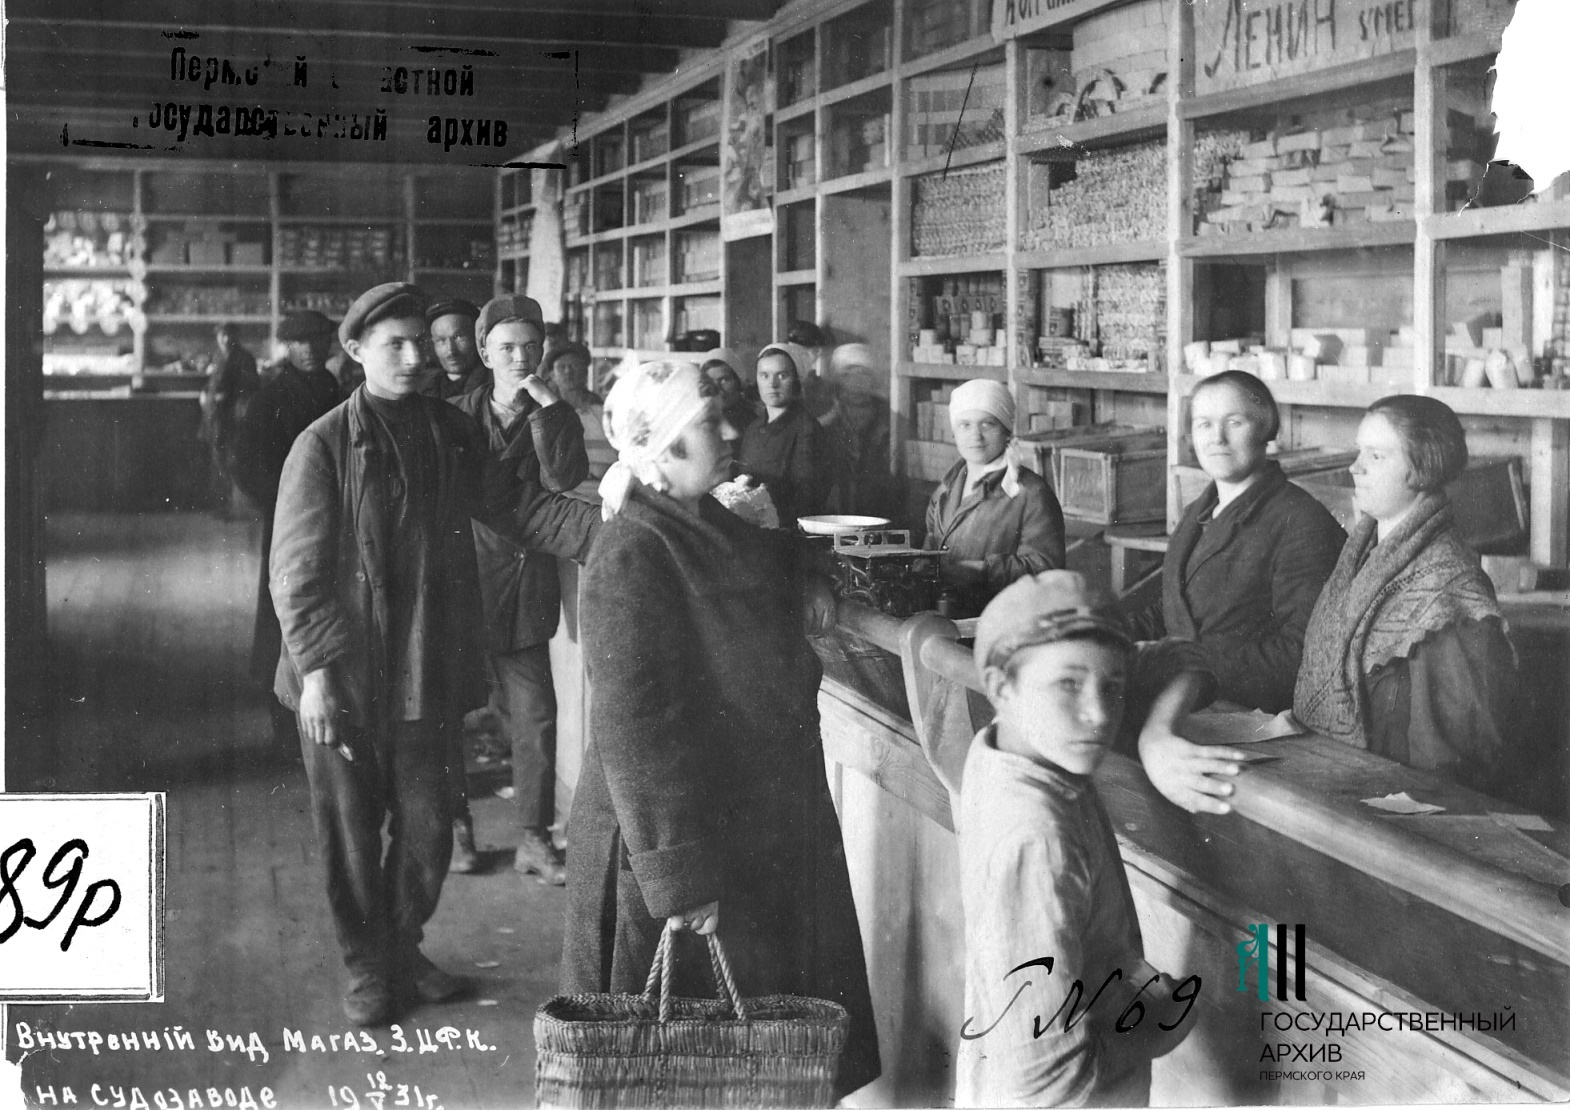 Снимок сделан в мае 1931 года. Кадр явно постановочный: позируют и продавцы, и покупатели